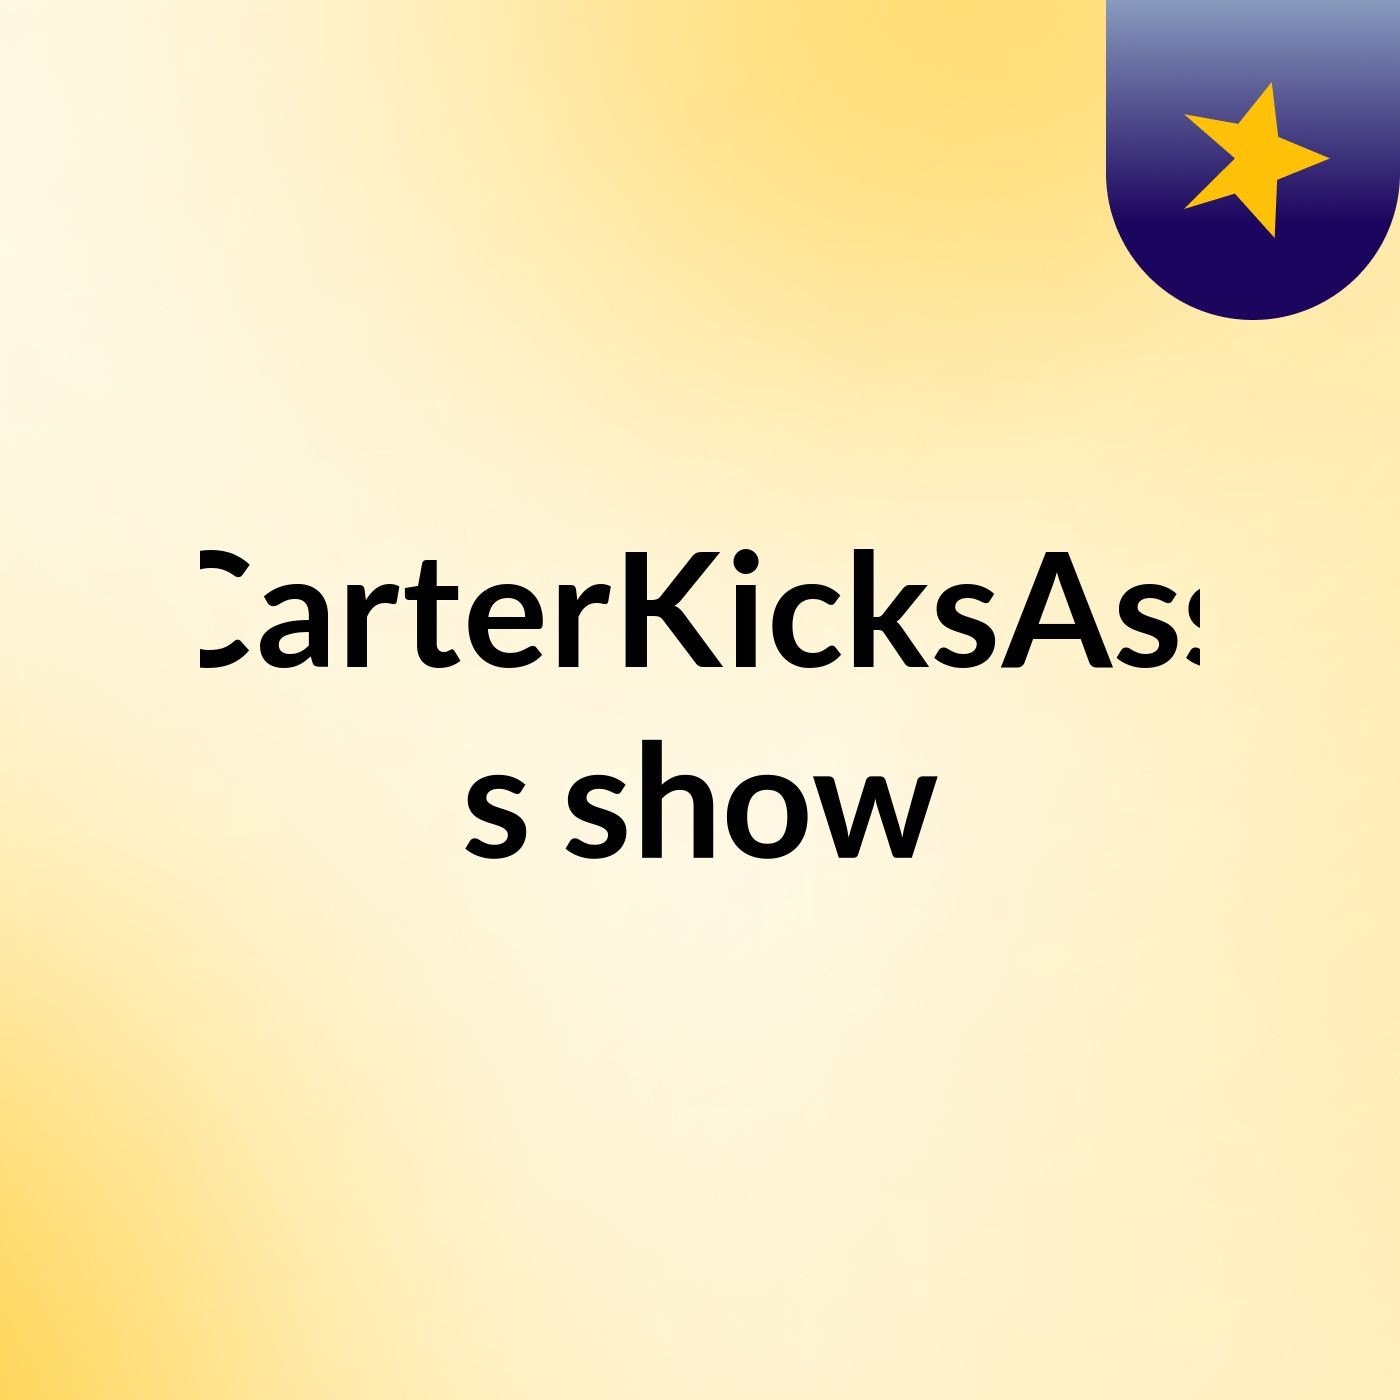 CarterKicksAss's show